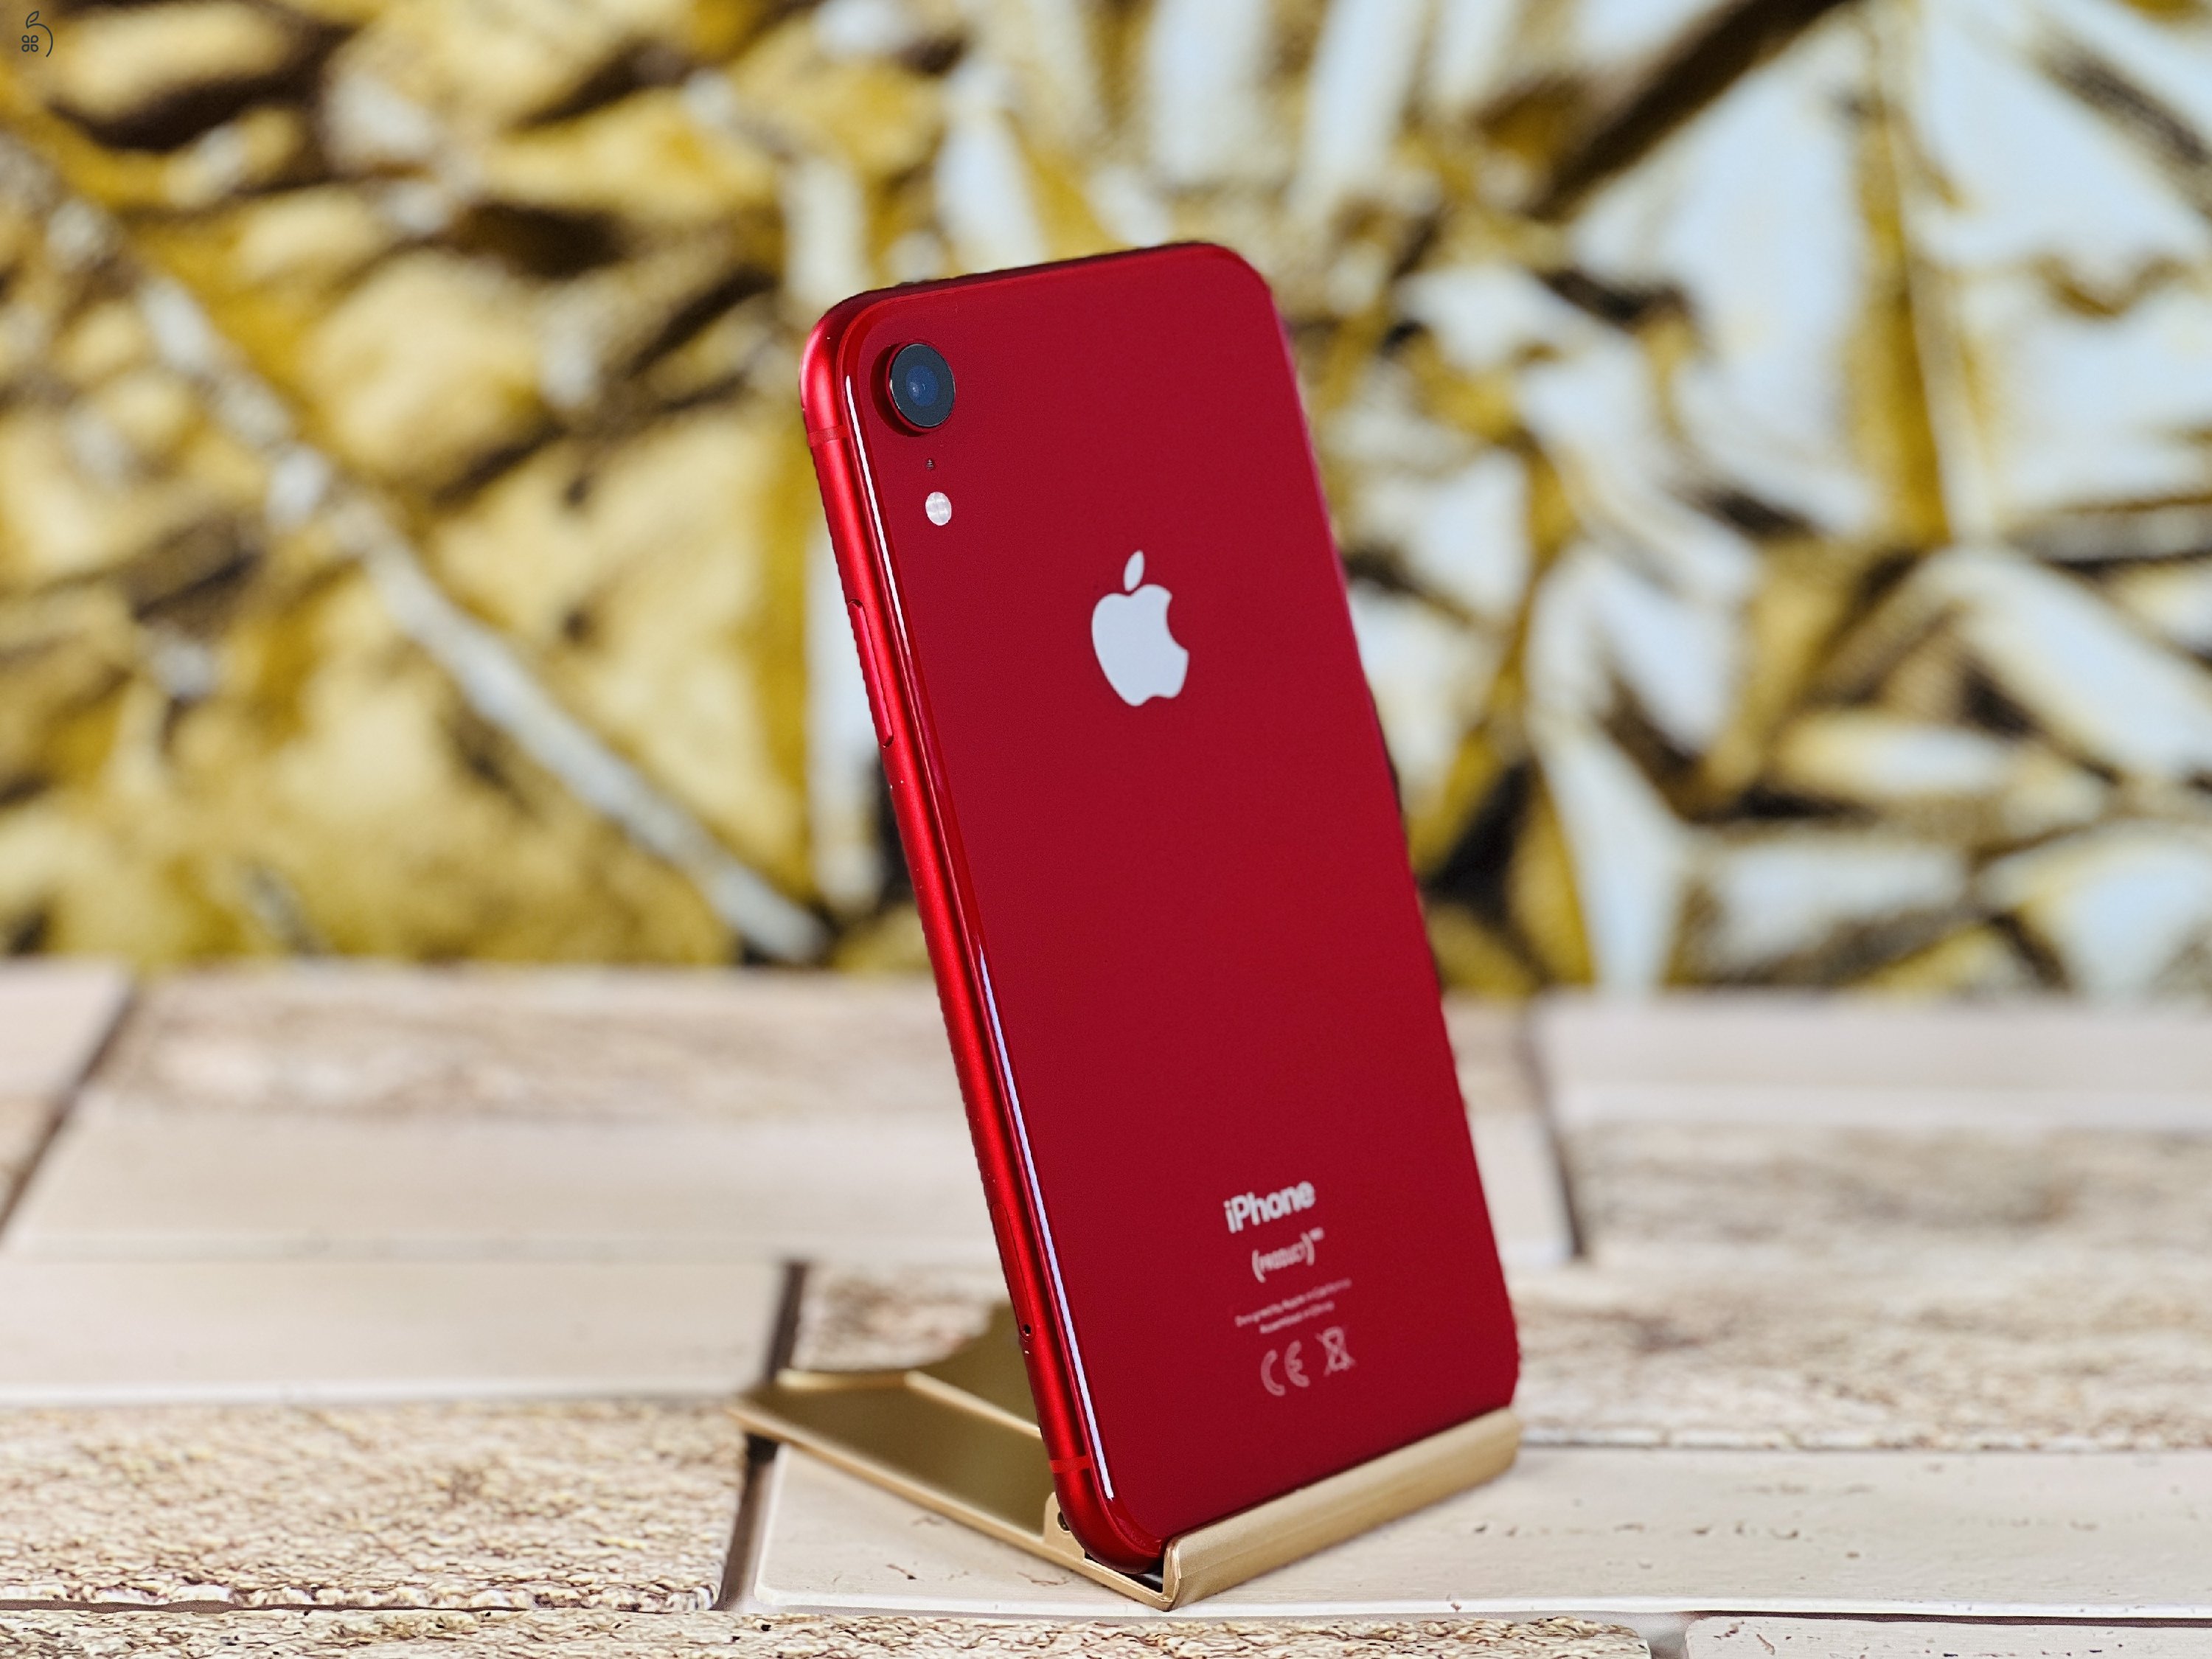 Eladó iPhone XR 128 GB PRODUCT RED szép állapotú - 12 HÓ GARANCIA - S1821